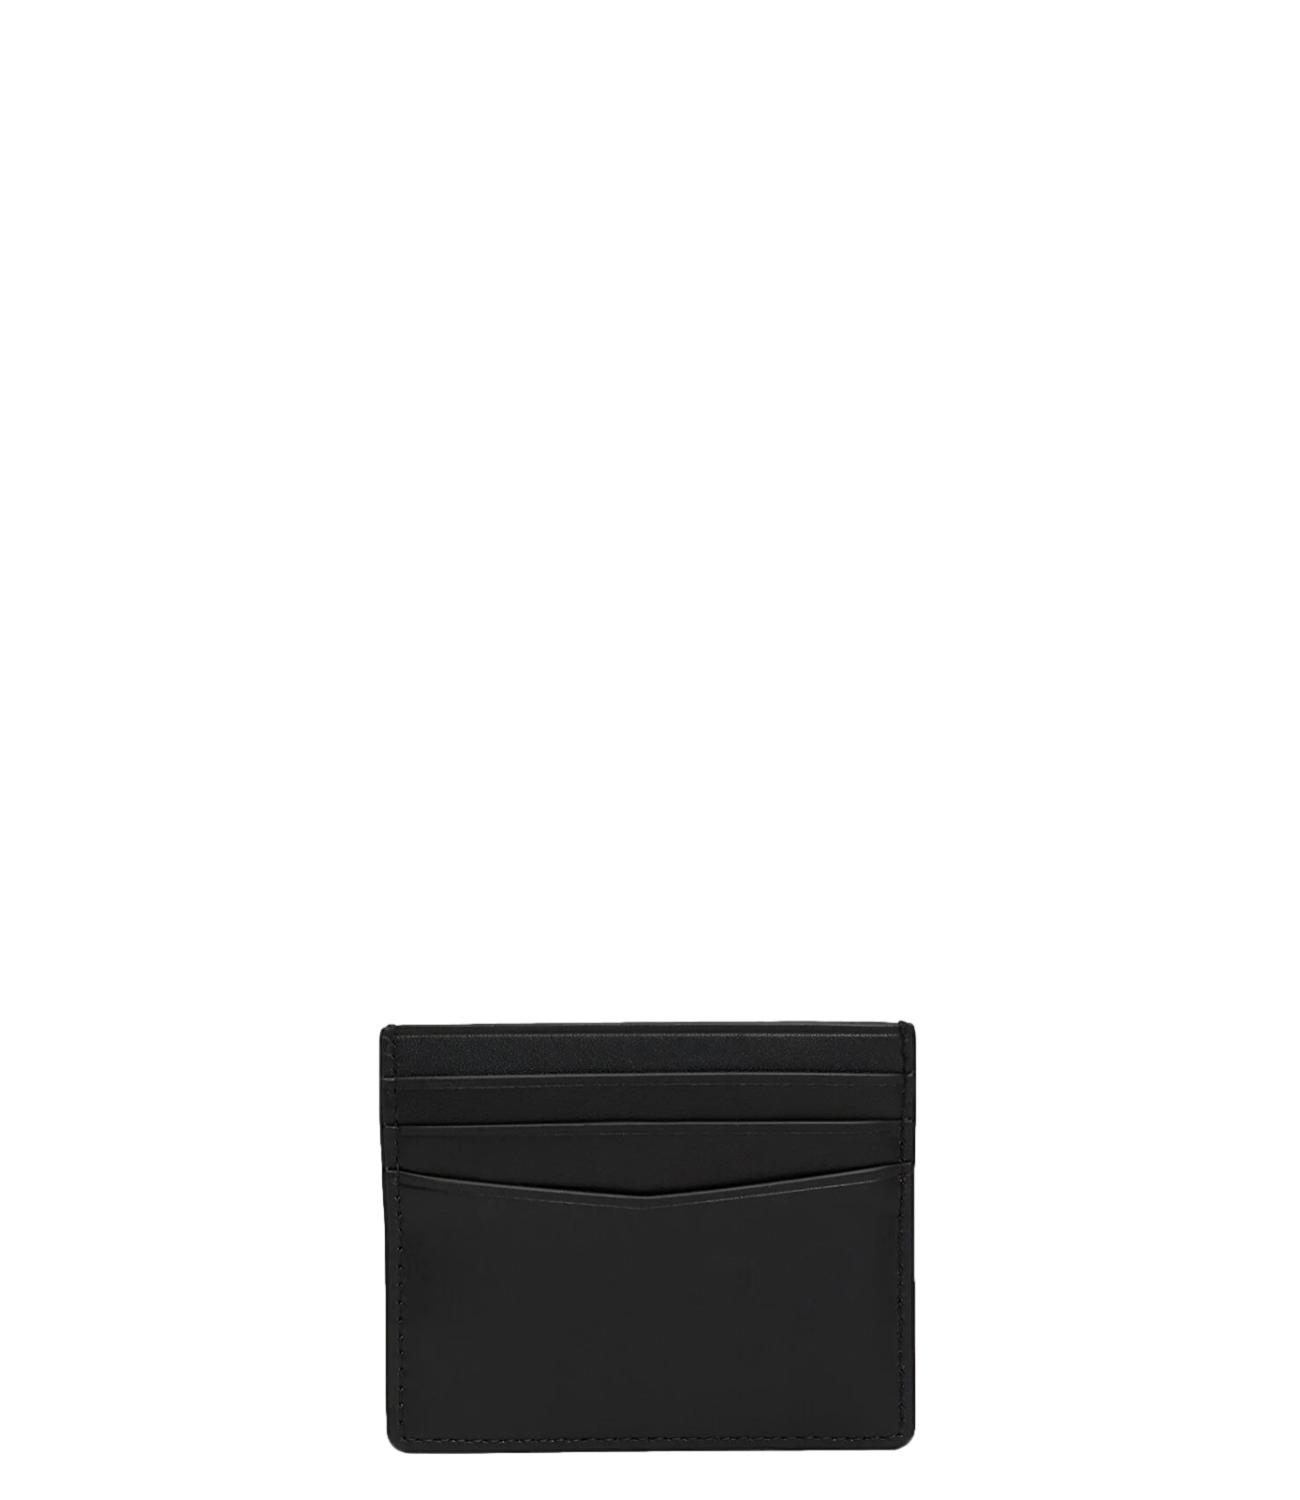 Portacarte Calvin Klein nero con logo cK